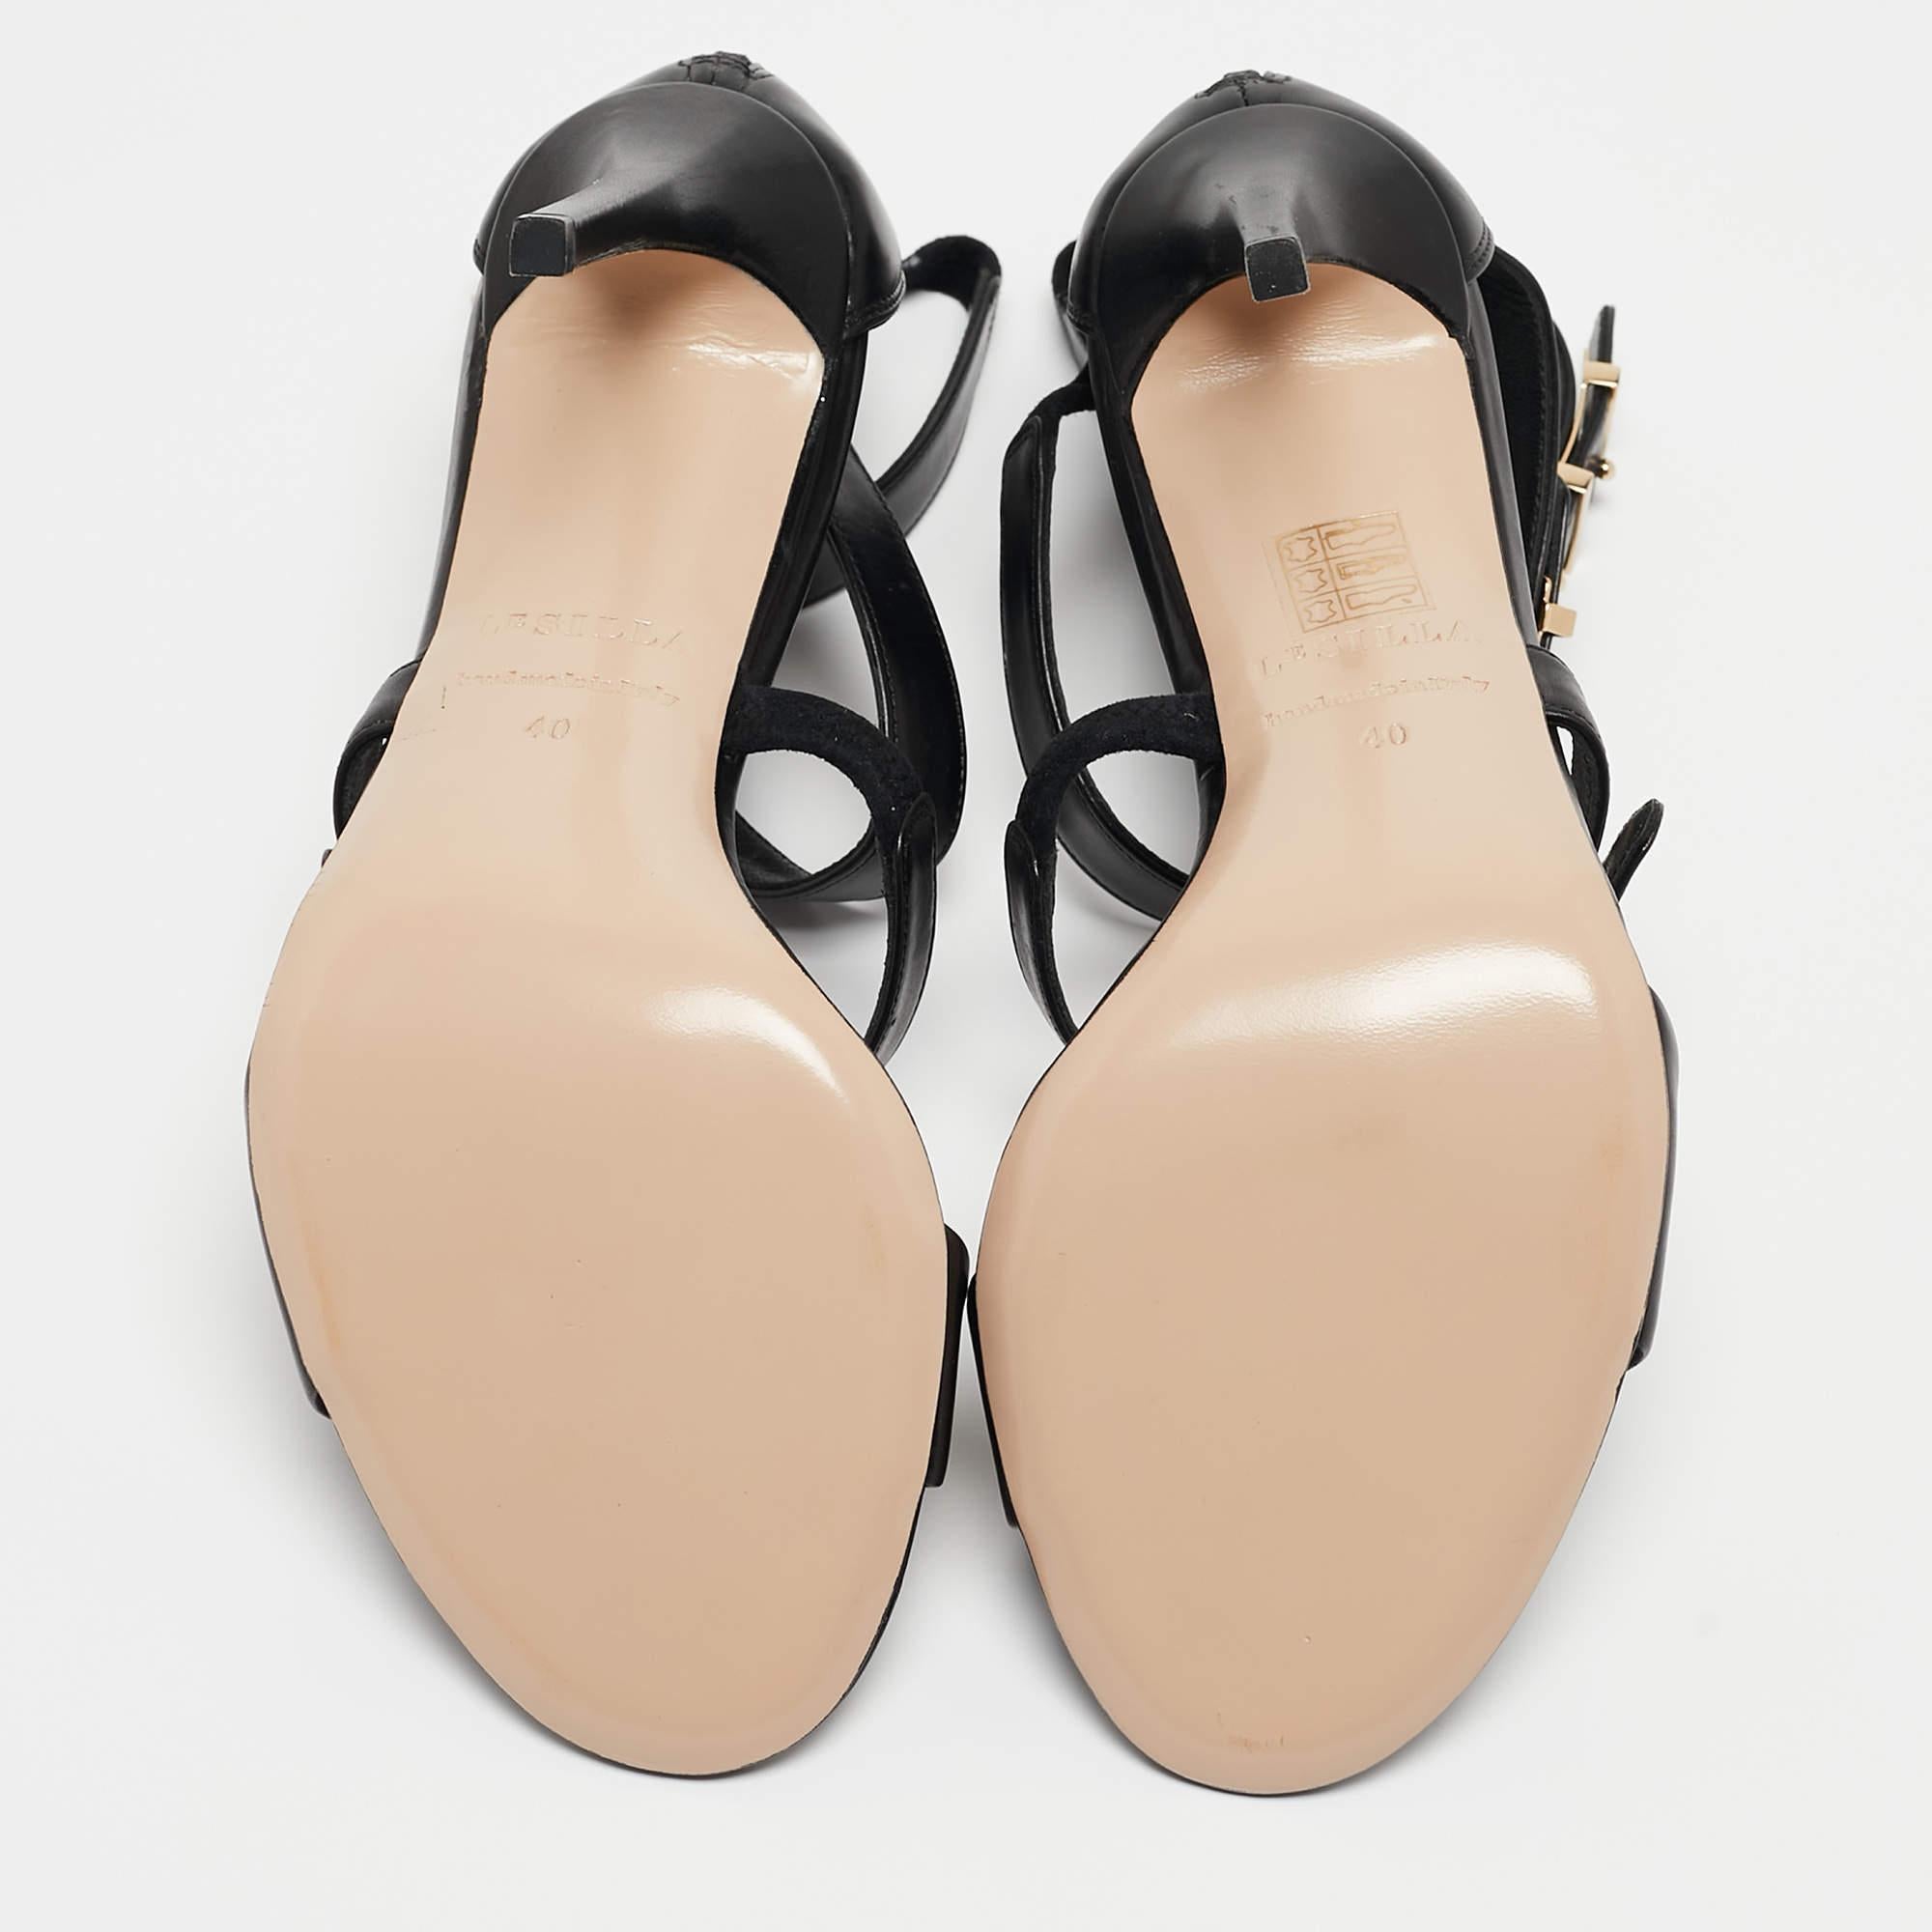 Le Silla Black Leather Minerva Strappy Sandals Size 40 For Sale 3